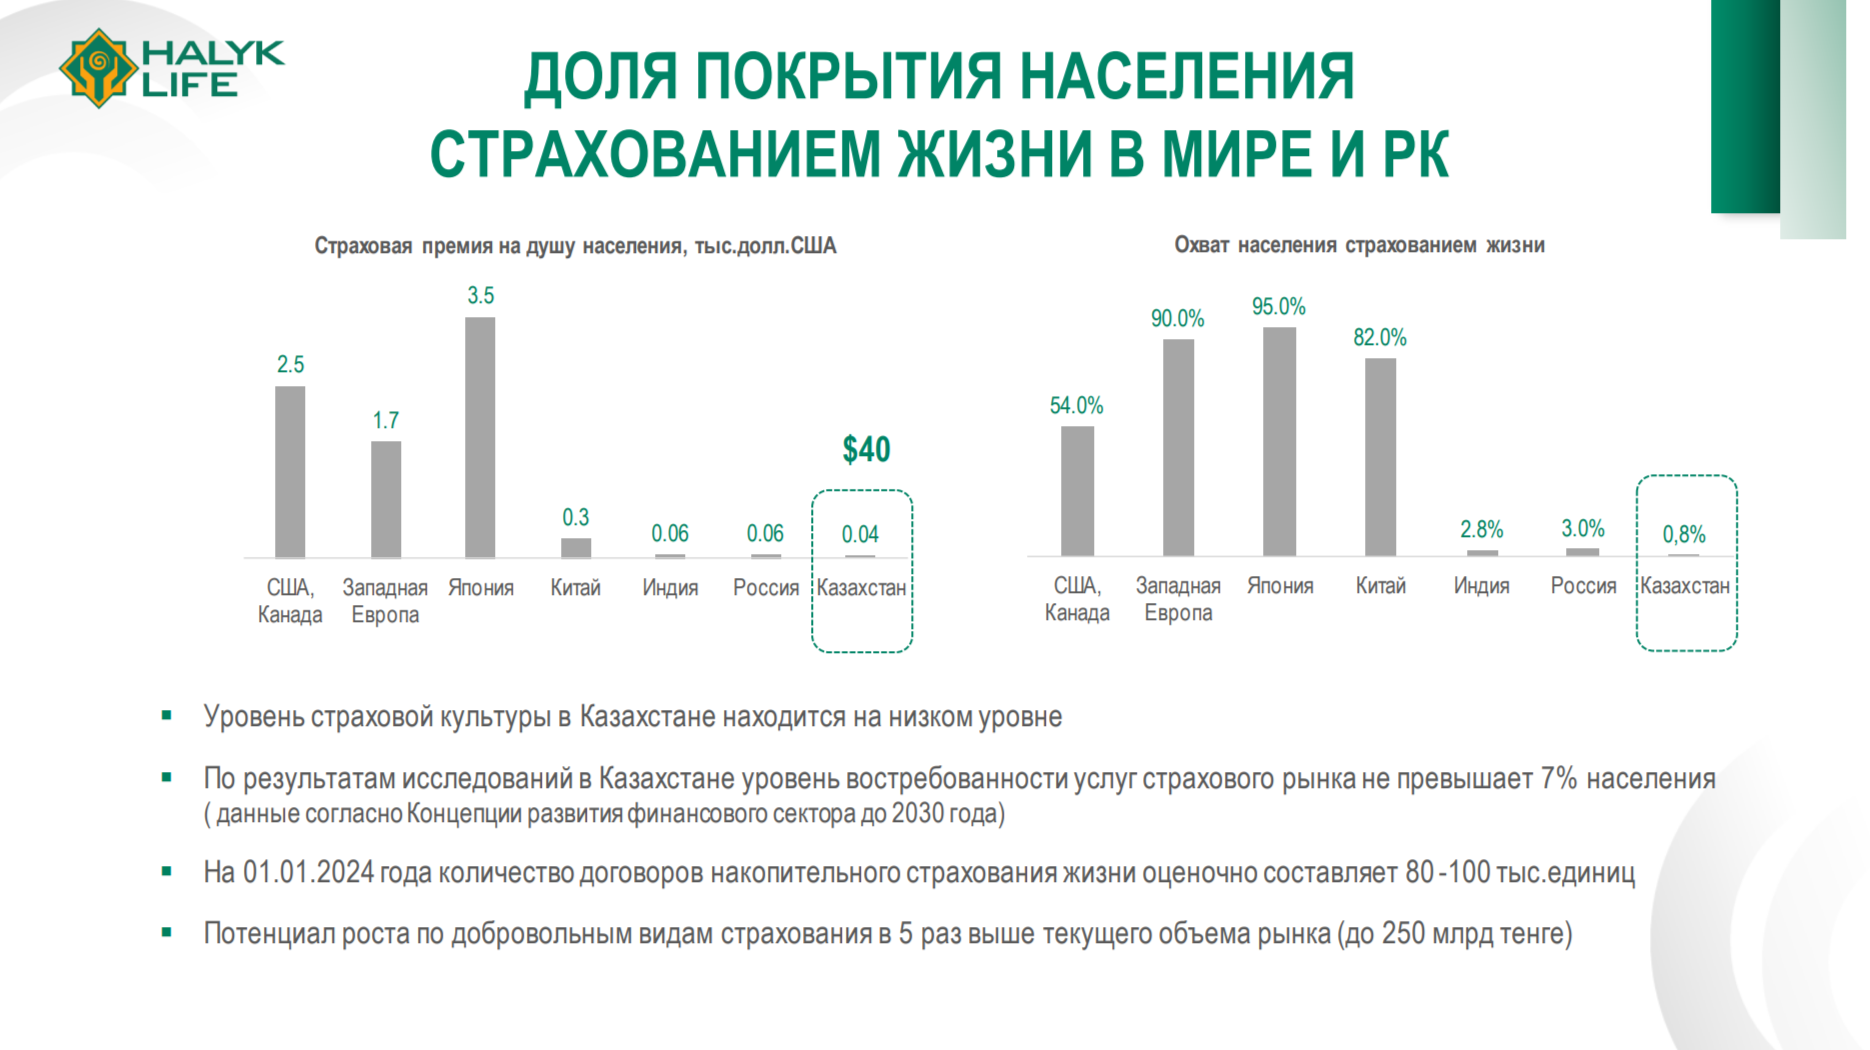 Что сдерживает развитие рынка страхования жизни в Казахстане 2959618 — Kapital.kz 